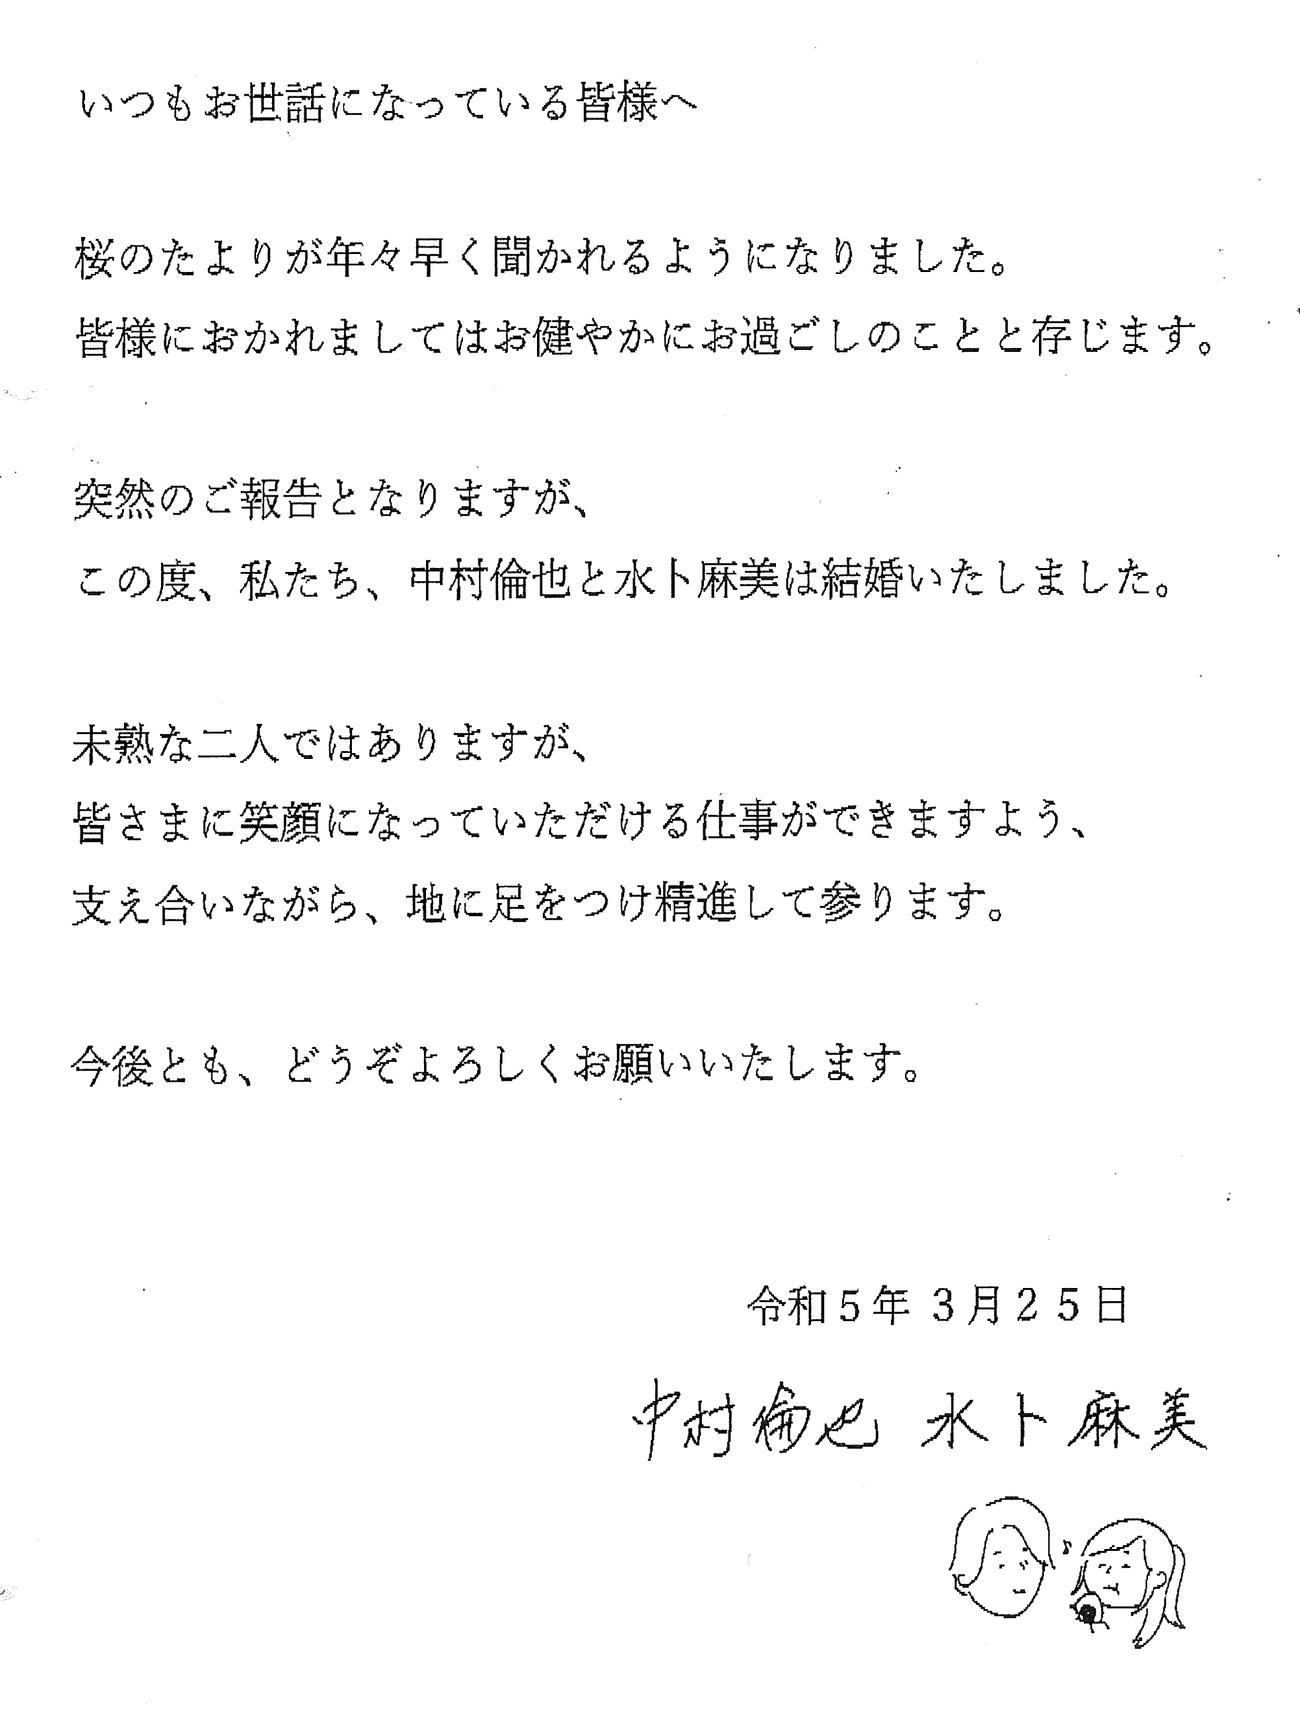 結婚を発表、報告した俳優中村倫也と日本テレビ水卜麻美アナウンサーの署名入り連名文書